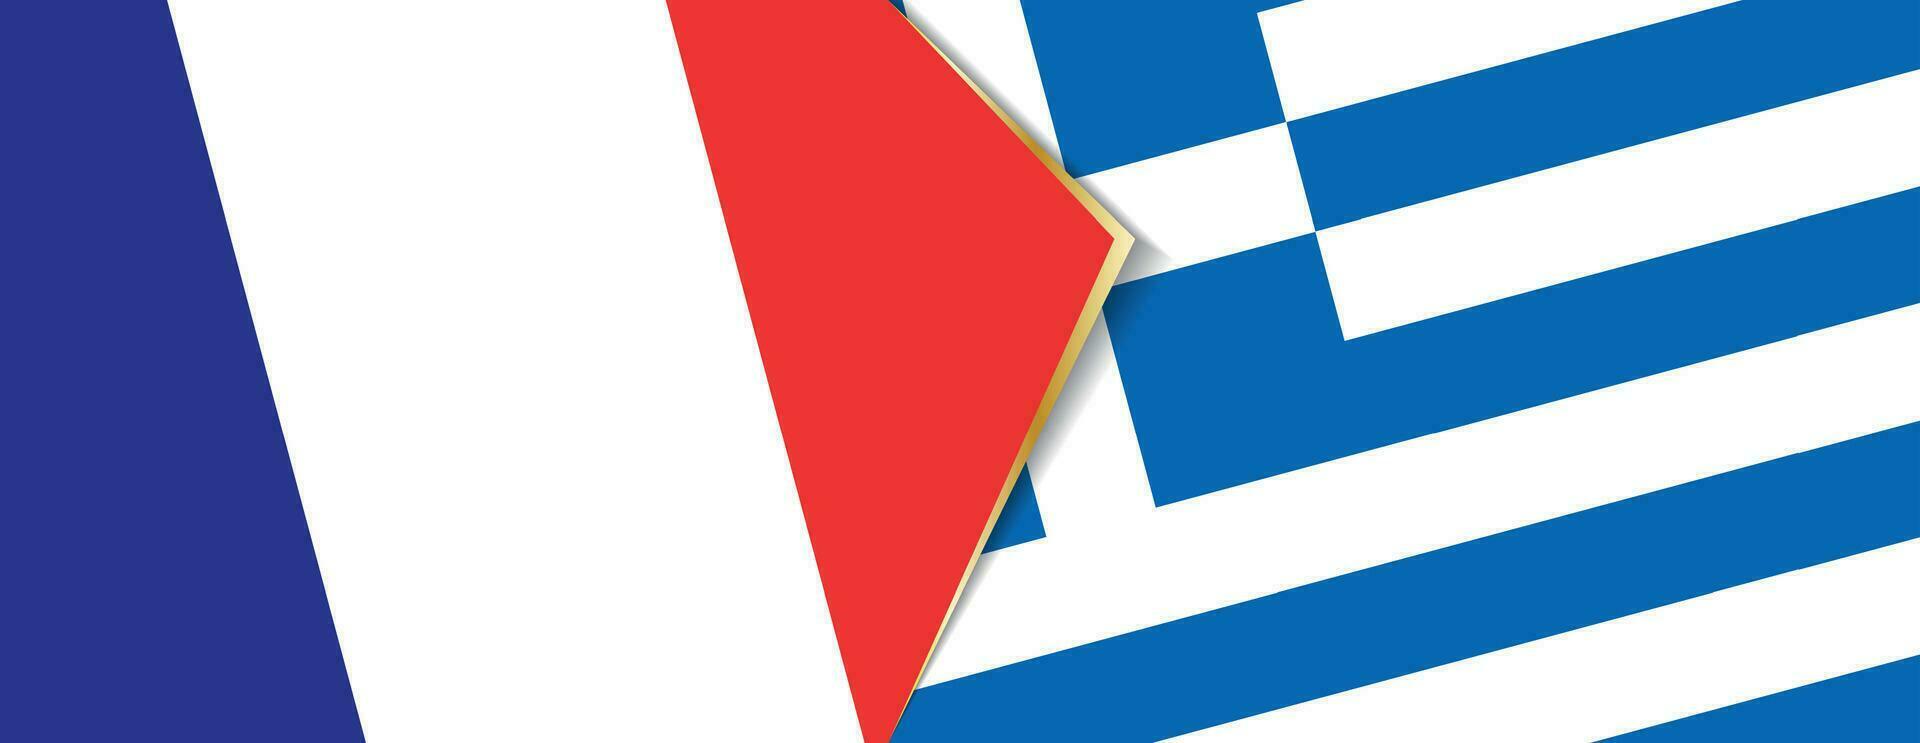 Francia y Grecia banderas, dos vector banderas